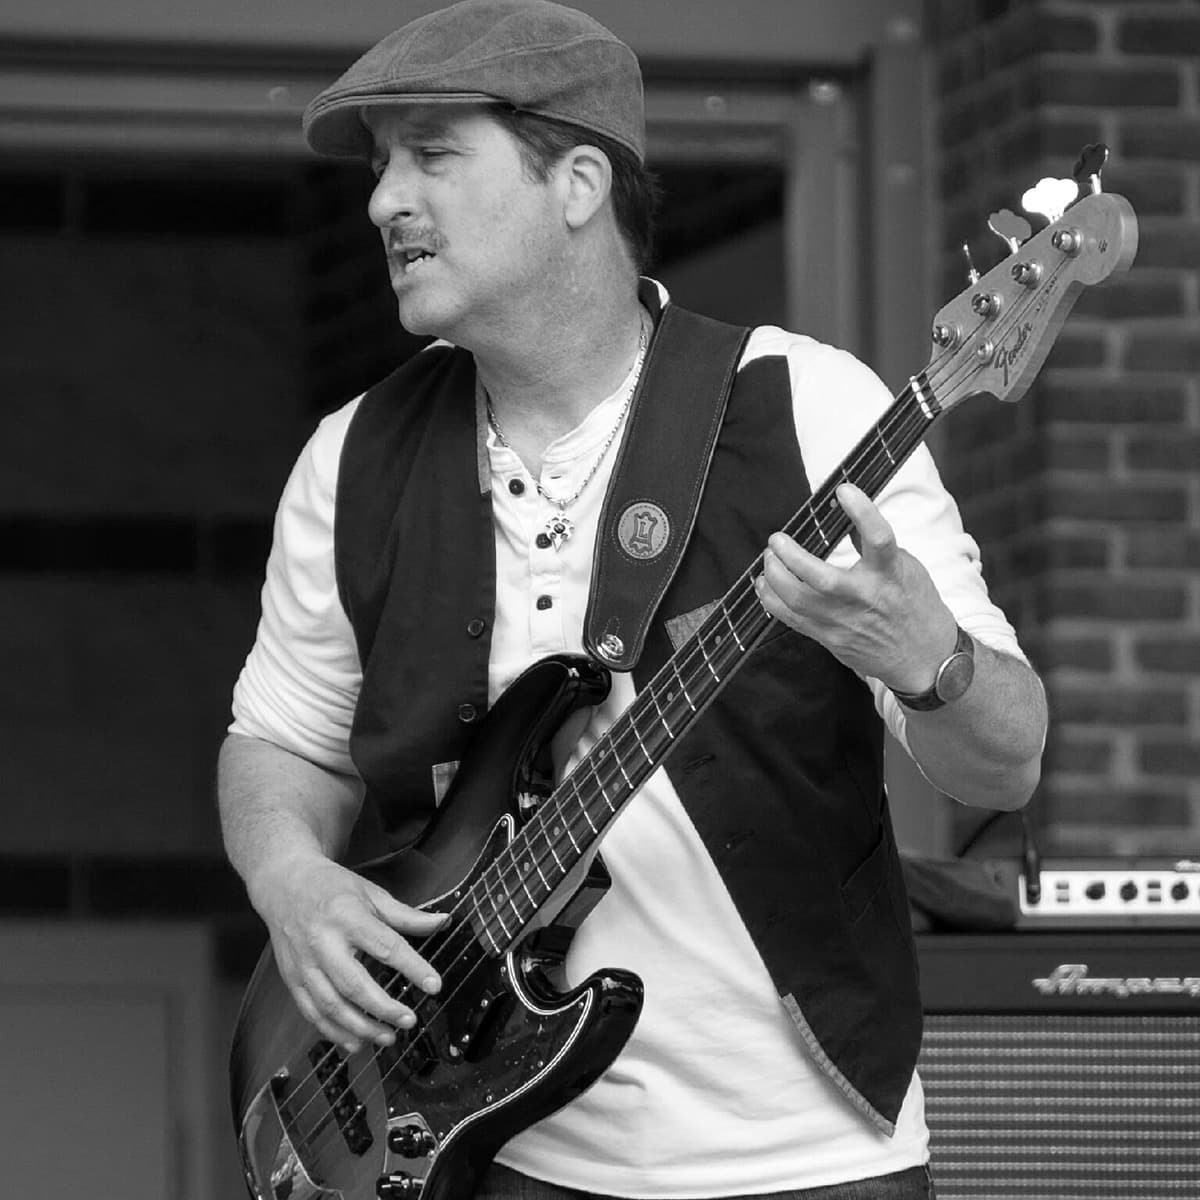 Bassist - Michael Contour